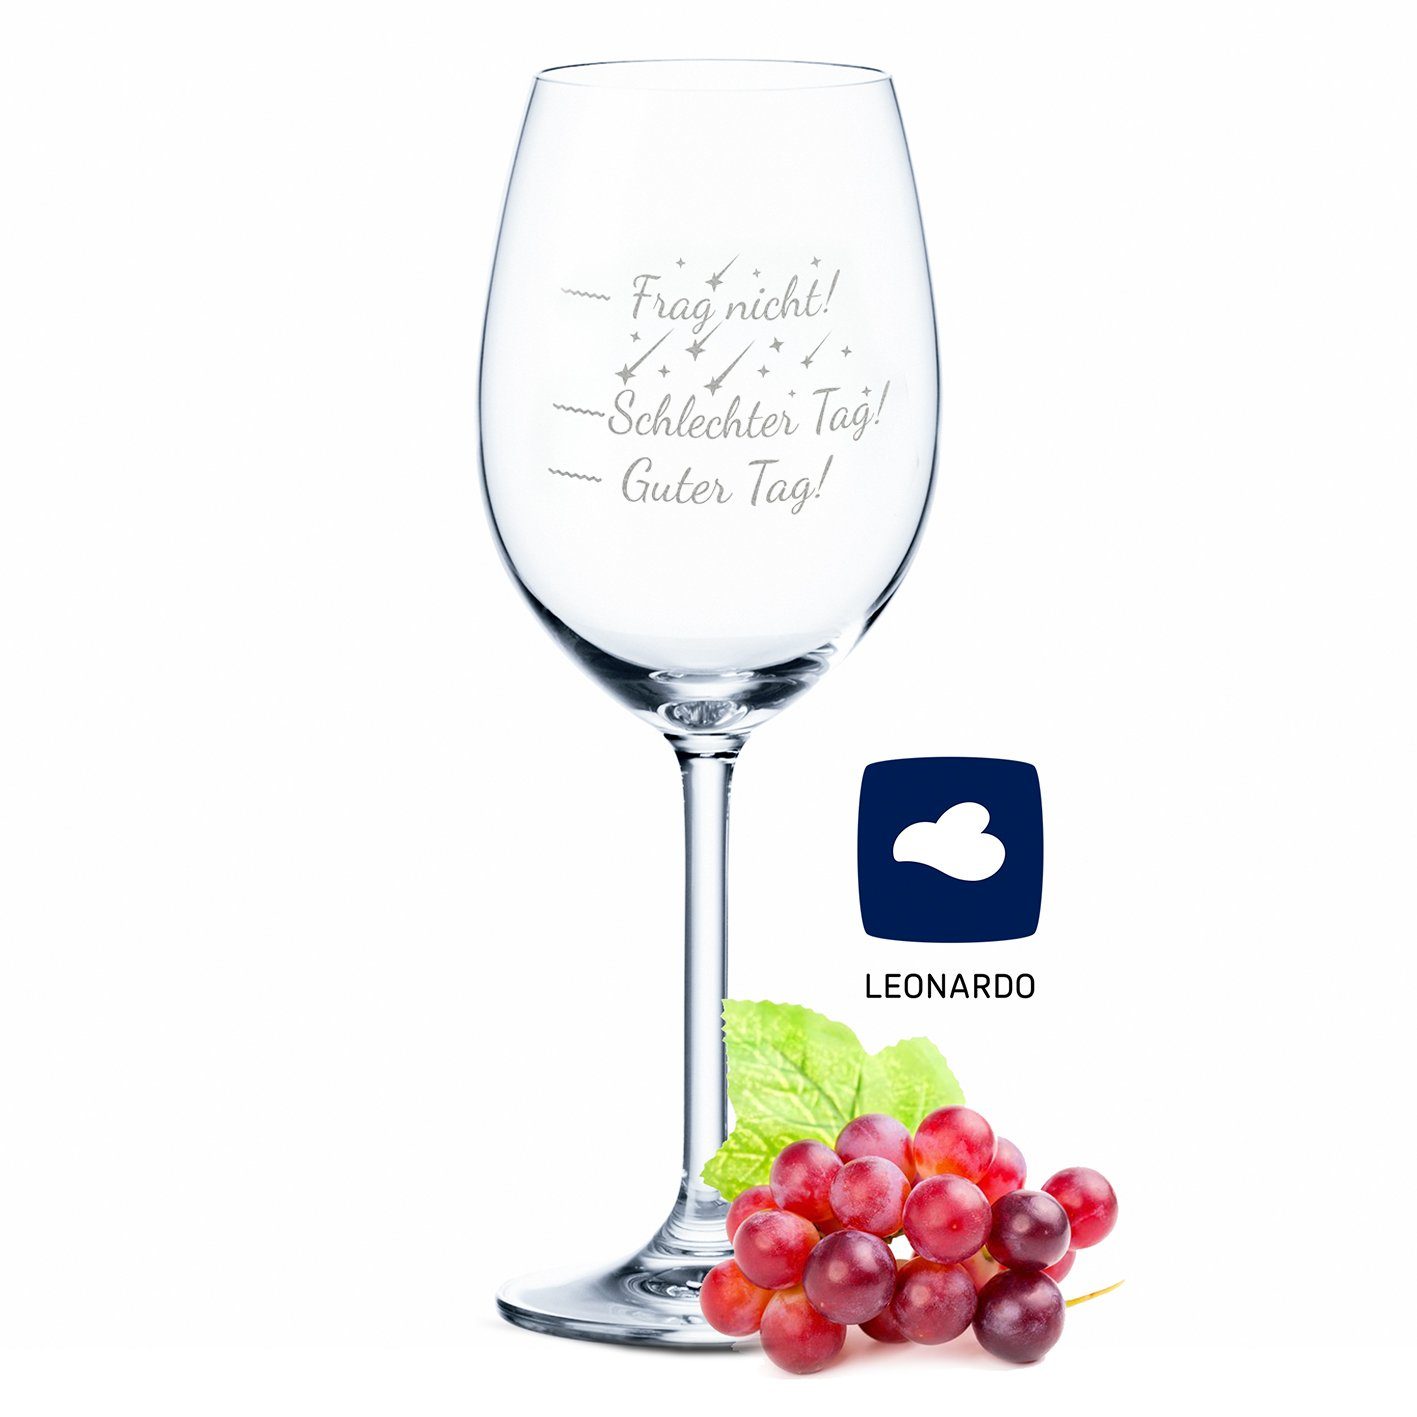 GRAVURZEILE Rotweinglas Leonardo Weinglas mit Gravur - Schlechter Tag, Guter Tag V2, Glas, graviertes Geschenk für Partner, Freunde & Familie